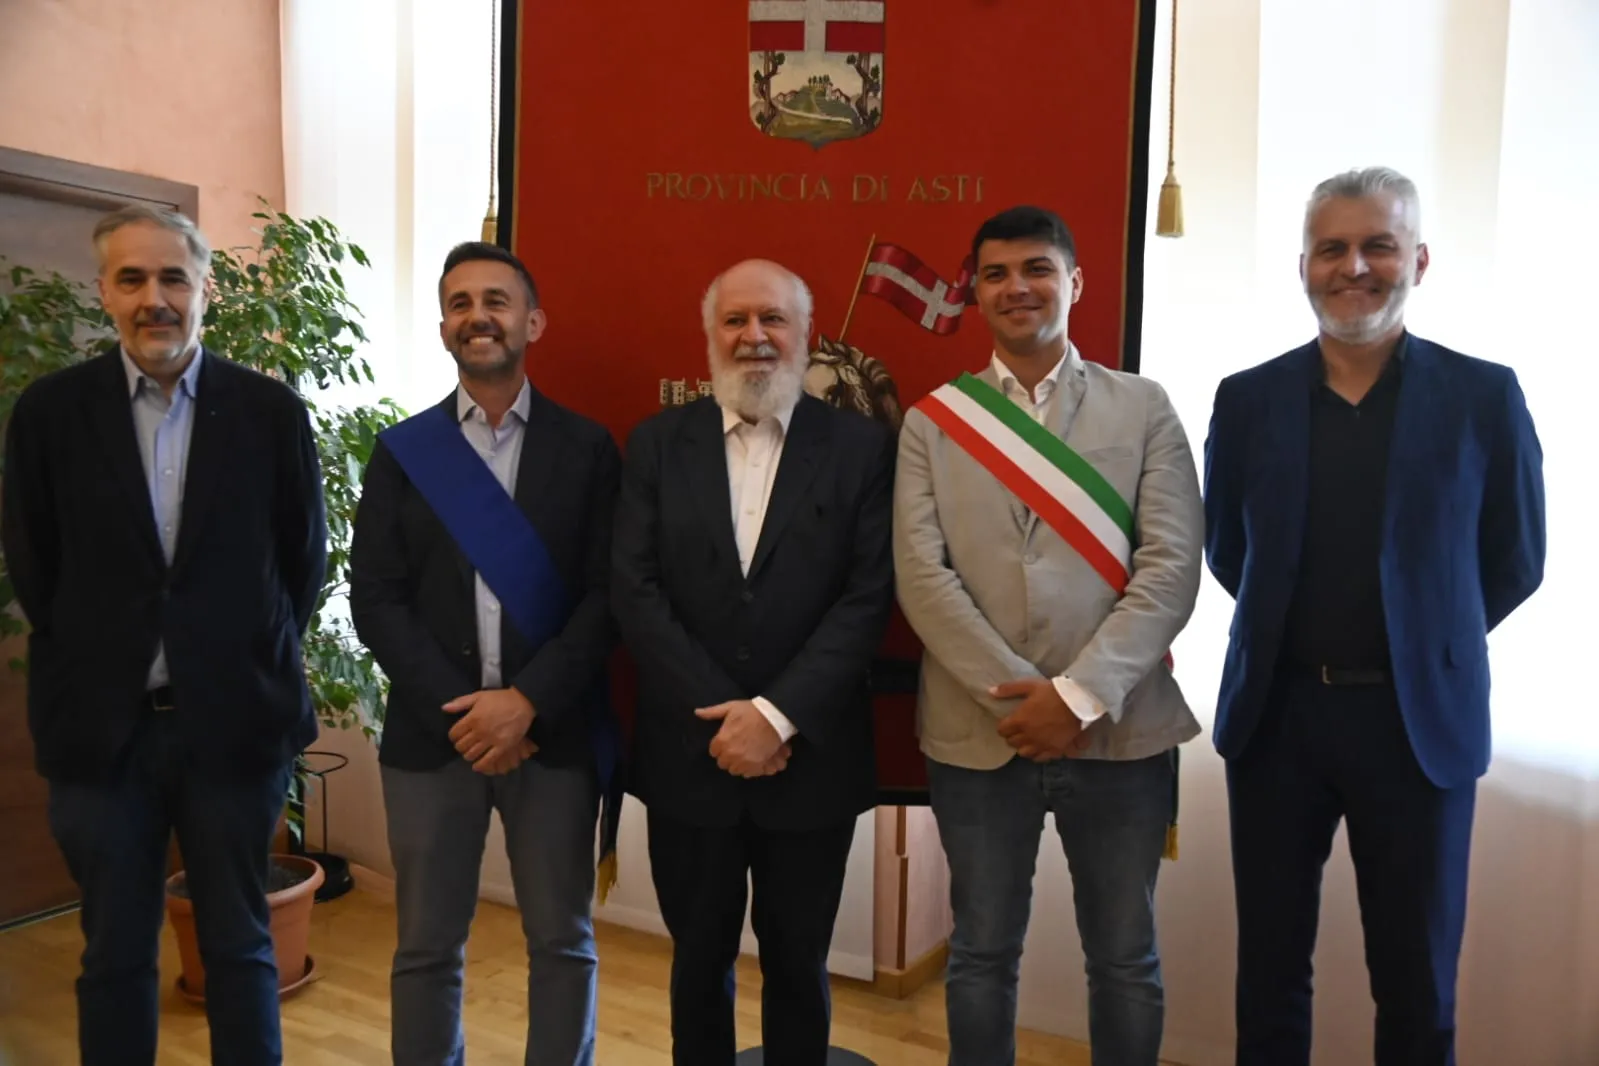 Firmato in Provincia di Asti il Protocollo d'Intesa per la realizzazione di una nuova Fondazione per l’Arte Contemporanea